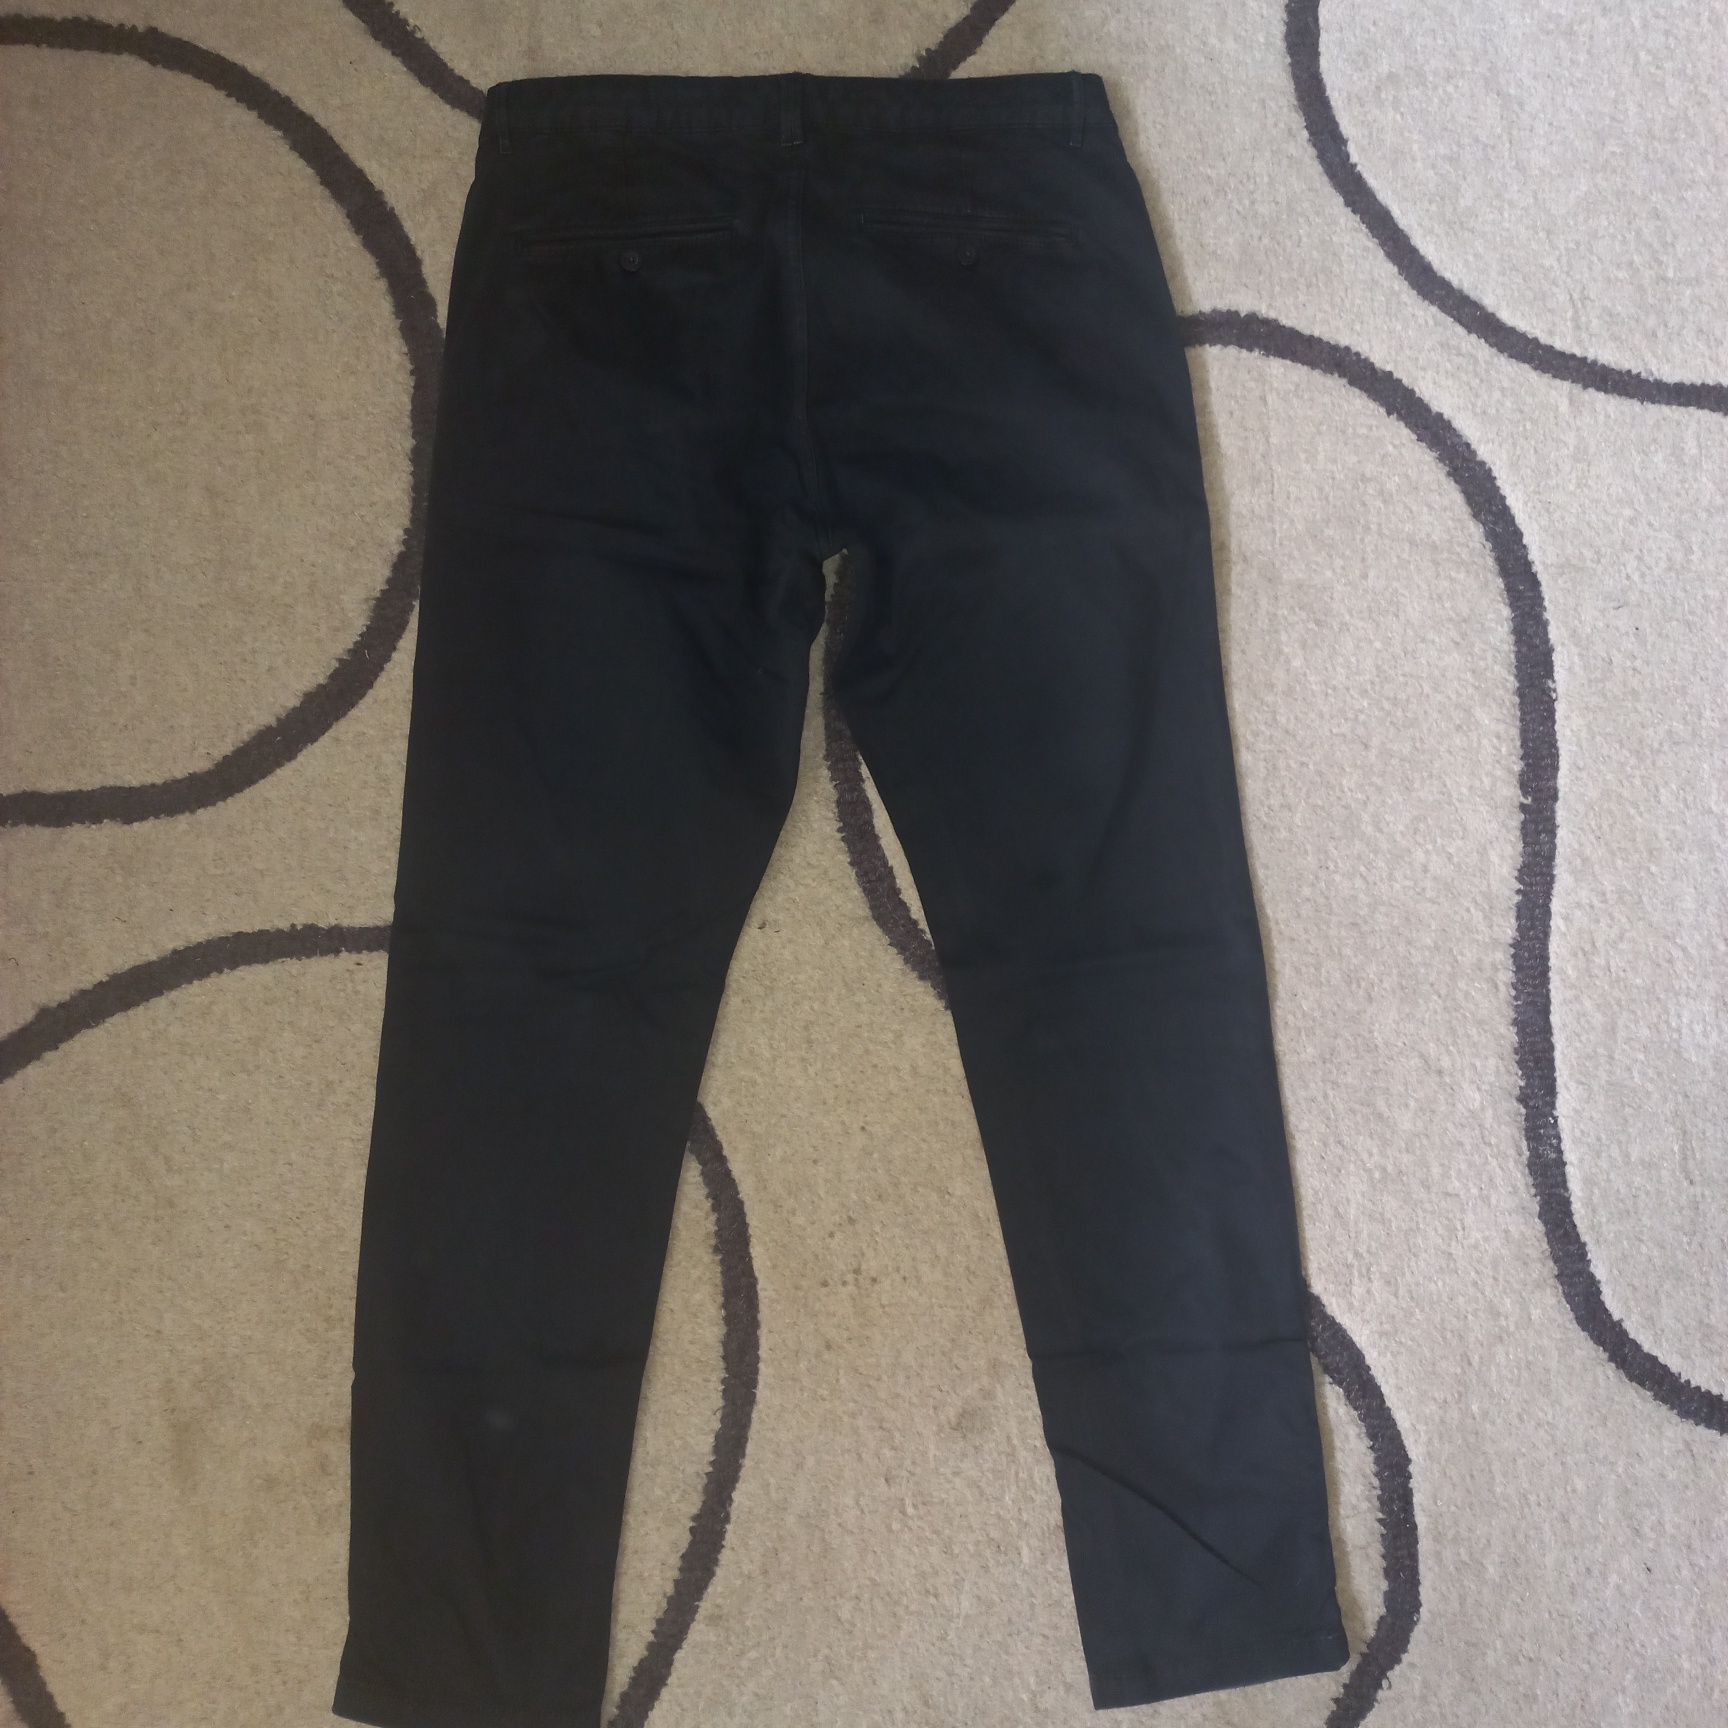 2x Spodnie jeansowe męskie ZARA rozmiar 42 beżowe i czarne.